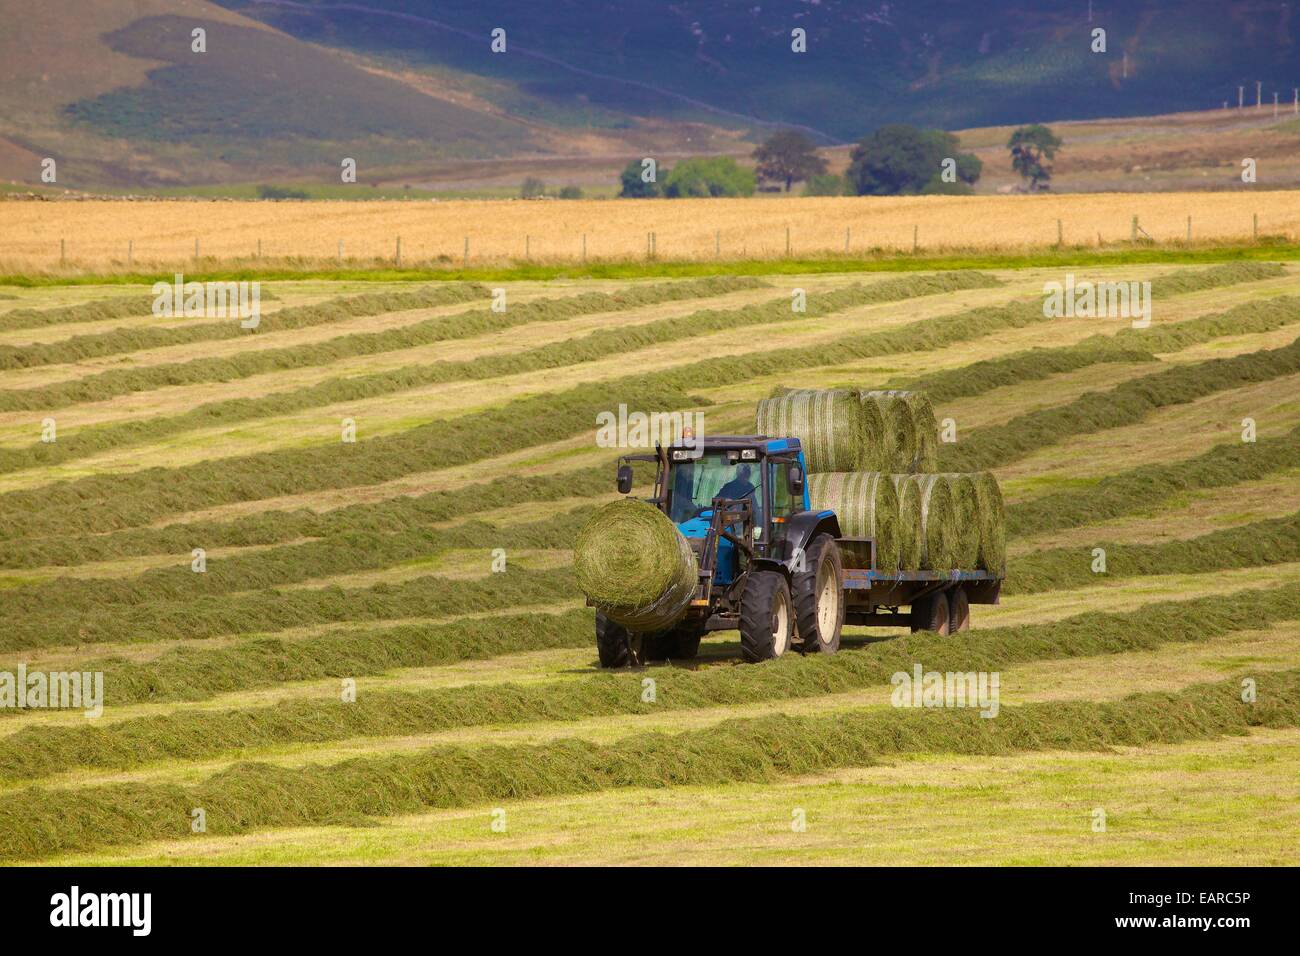 Le tracteur et la remorque qui transporte des ballots de foin. Eden Valley, Cumbria, England, UK. Banque D'Images